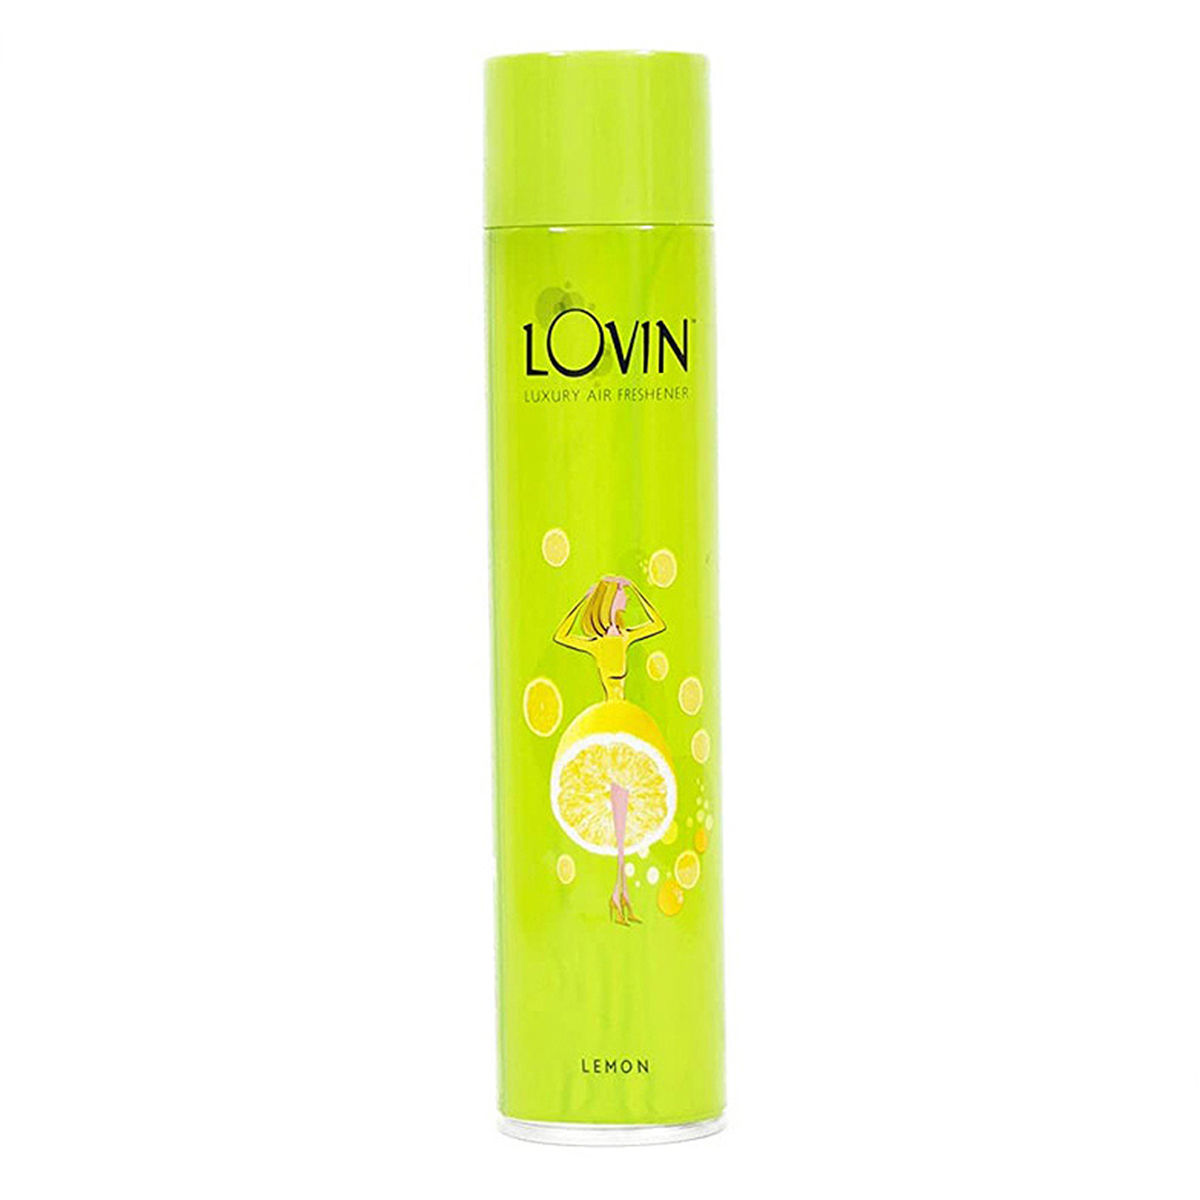 Buy Lovin Lemon Room Freshner Spray, 160 ml Online